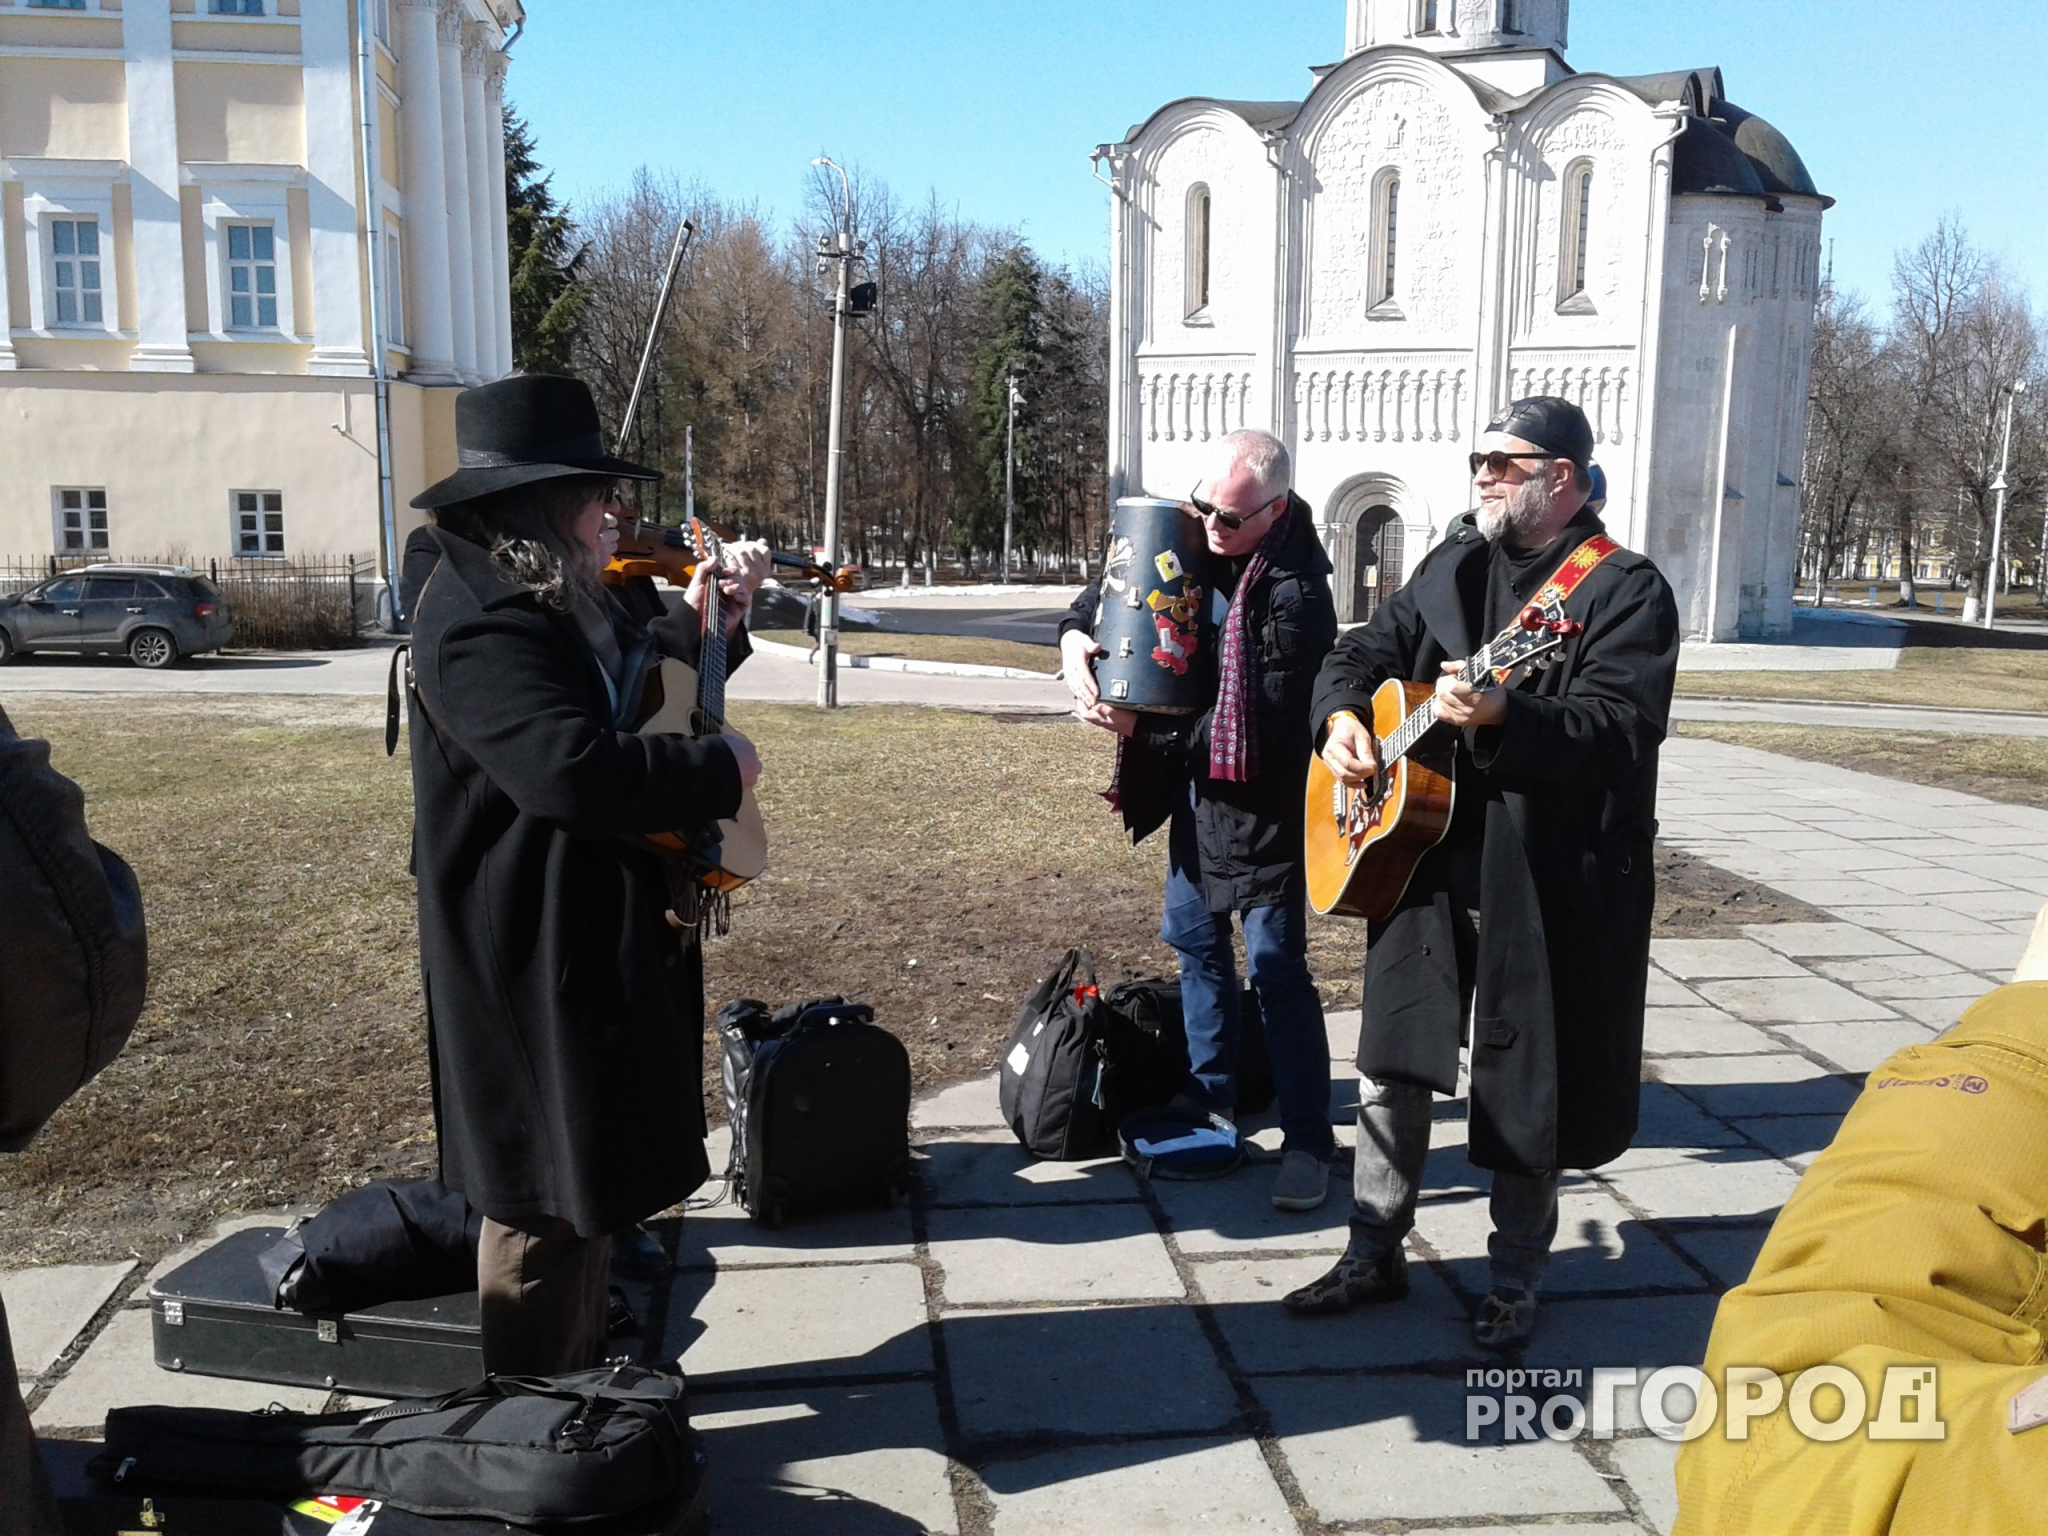 Рок-легенда дал бесплатный концерт для всех желающих в самом центре Владимира